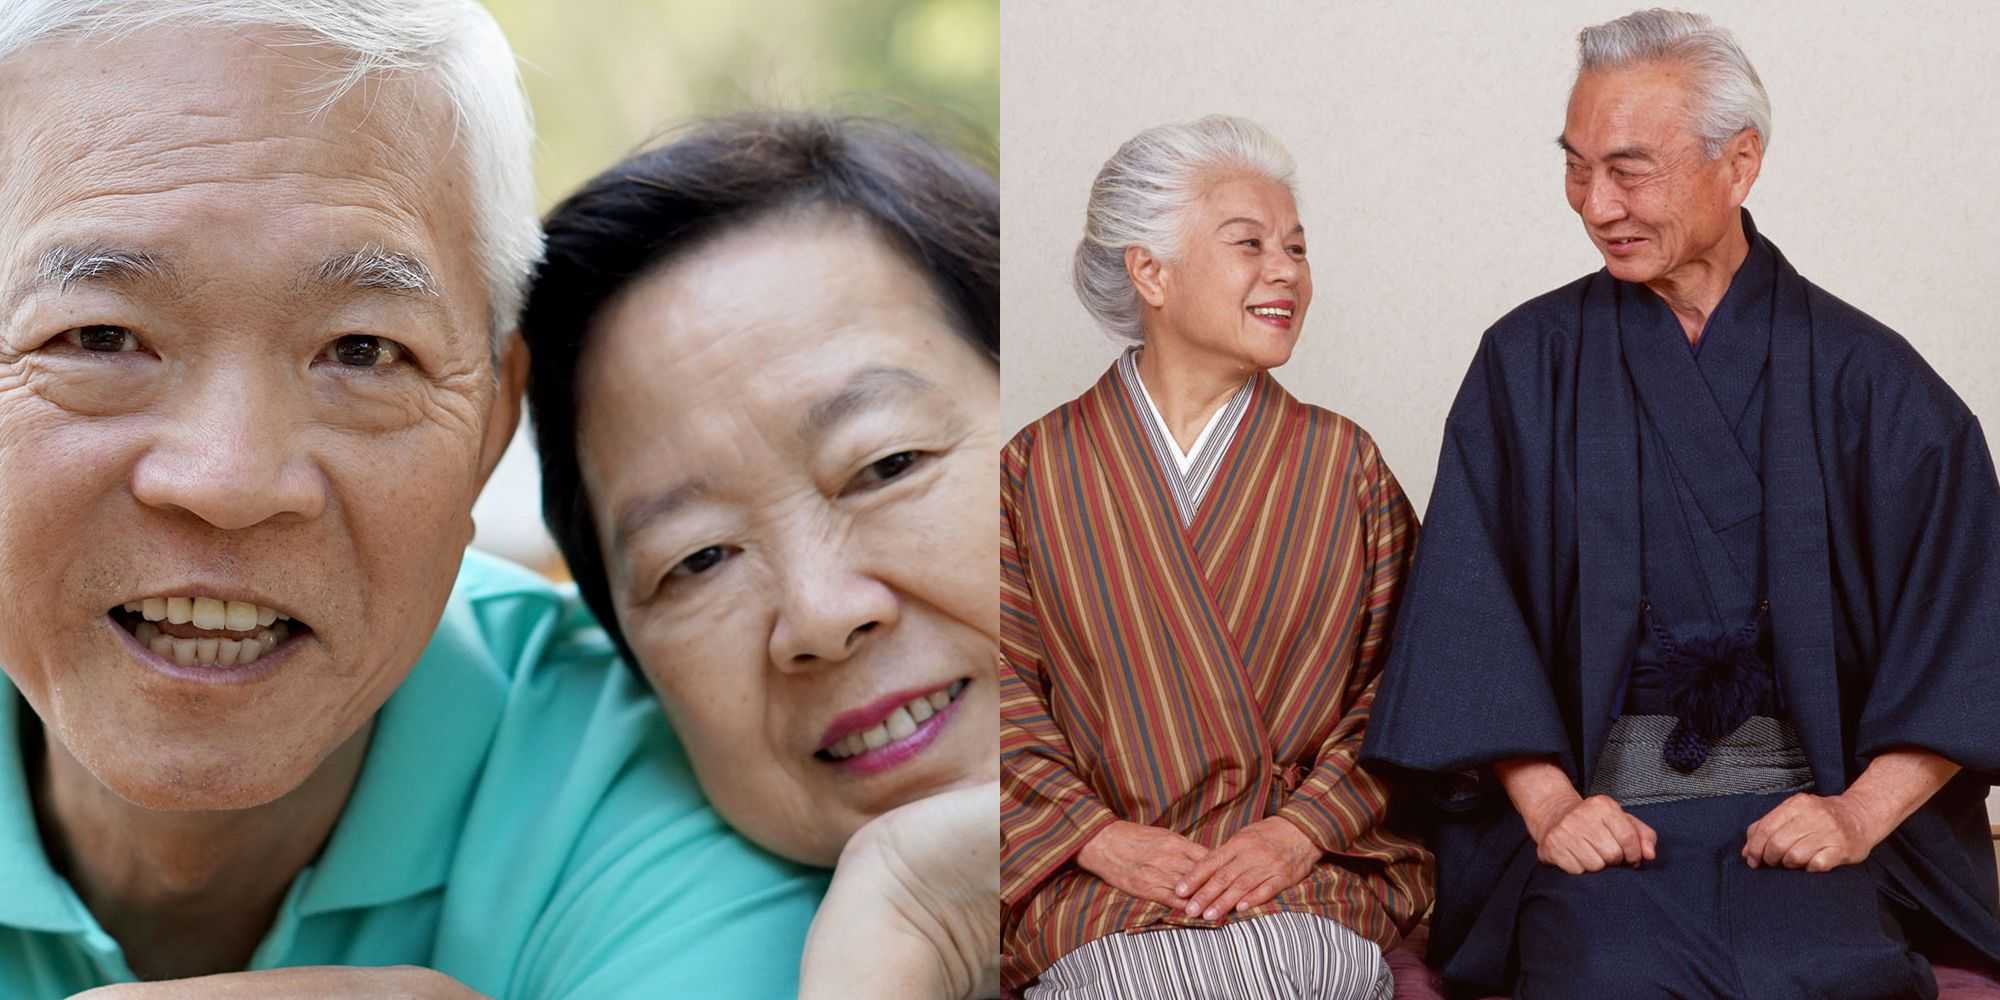 Пенсия в японии: размер и возраст для выхода на пенсию по старости